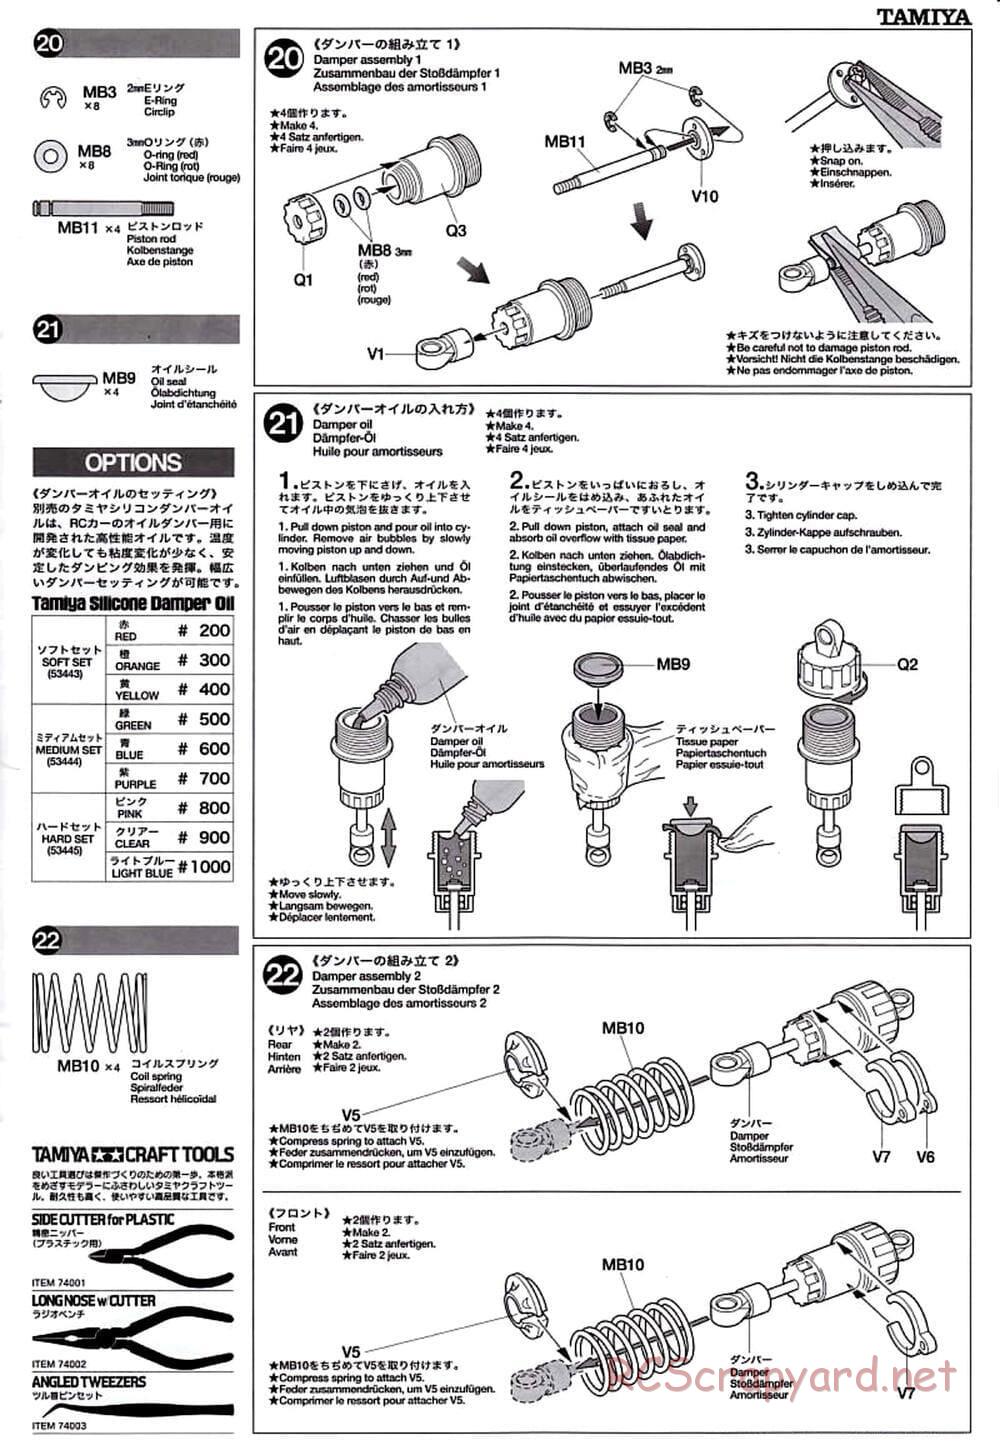 Tamiya - TT-01D Chassis - Manual - Page 11